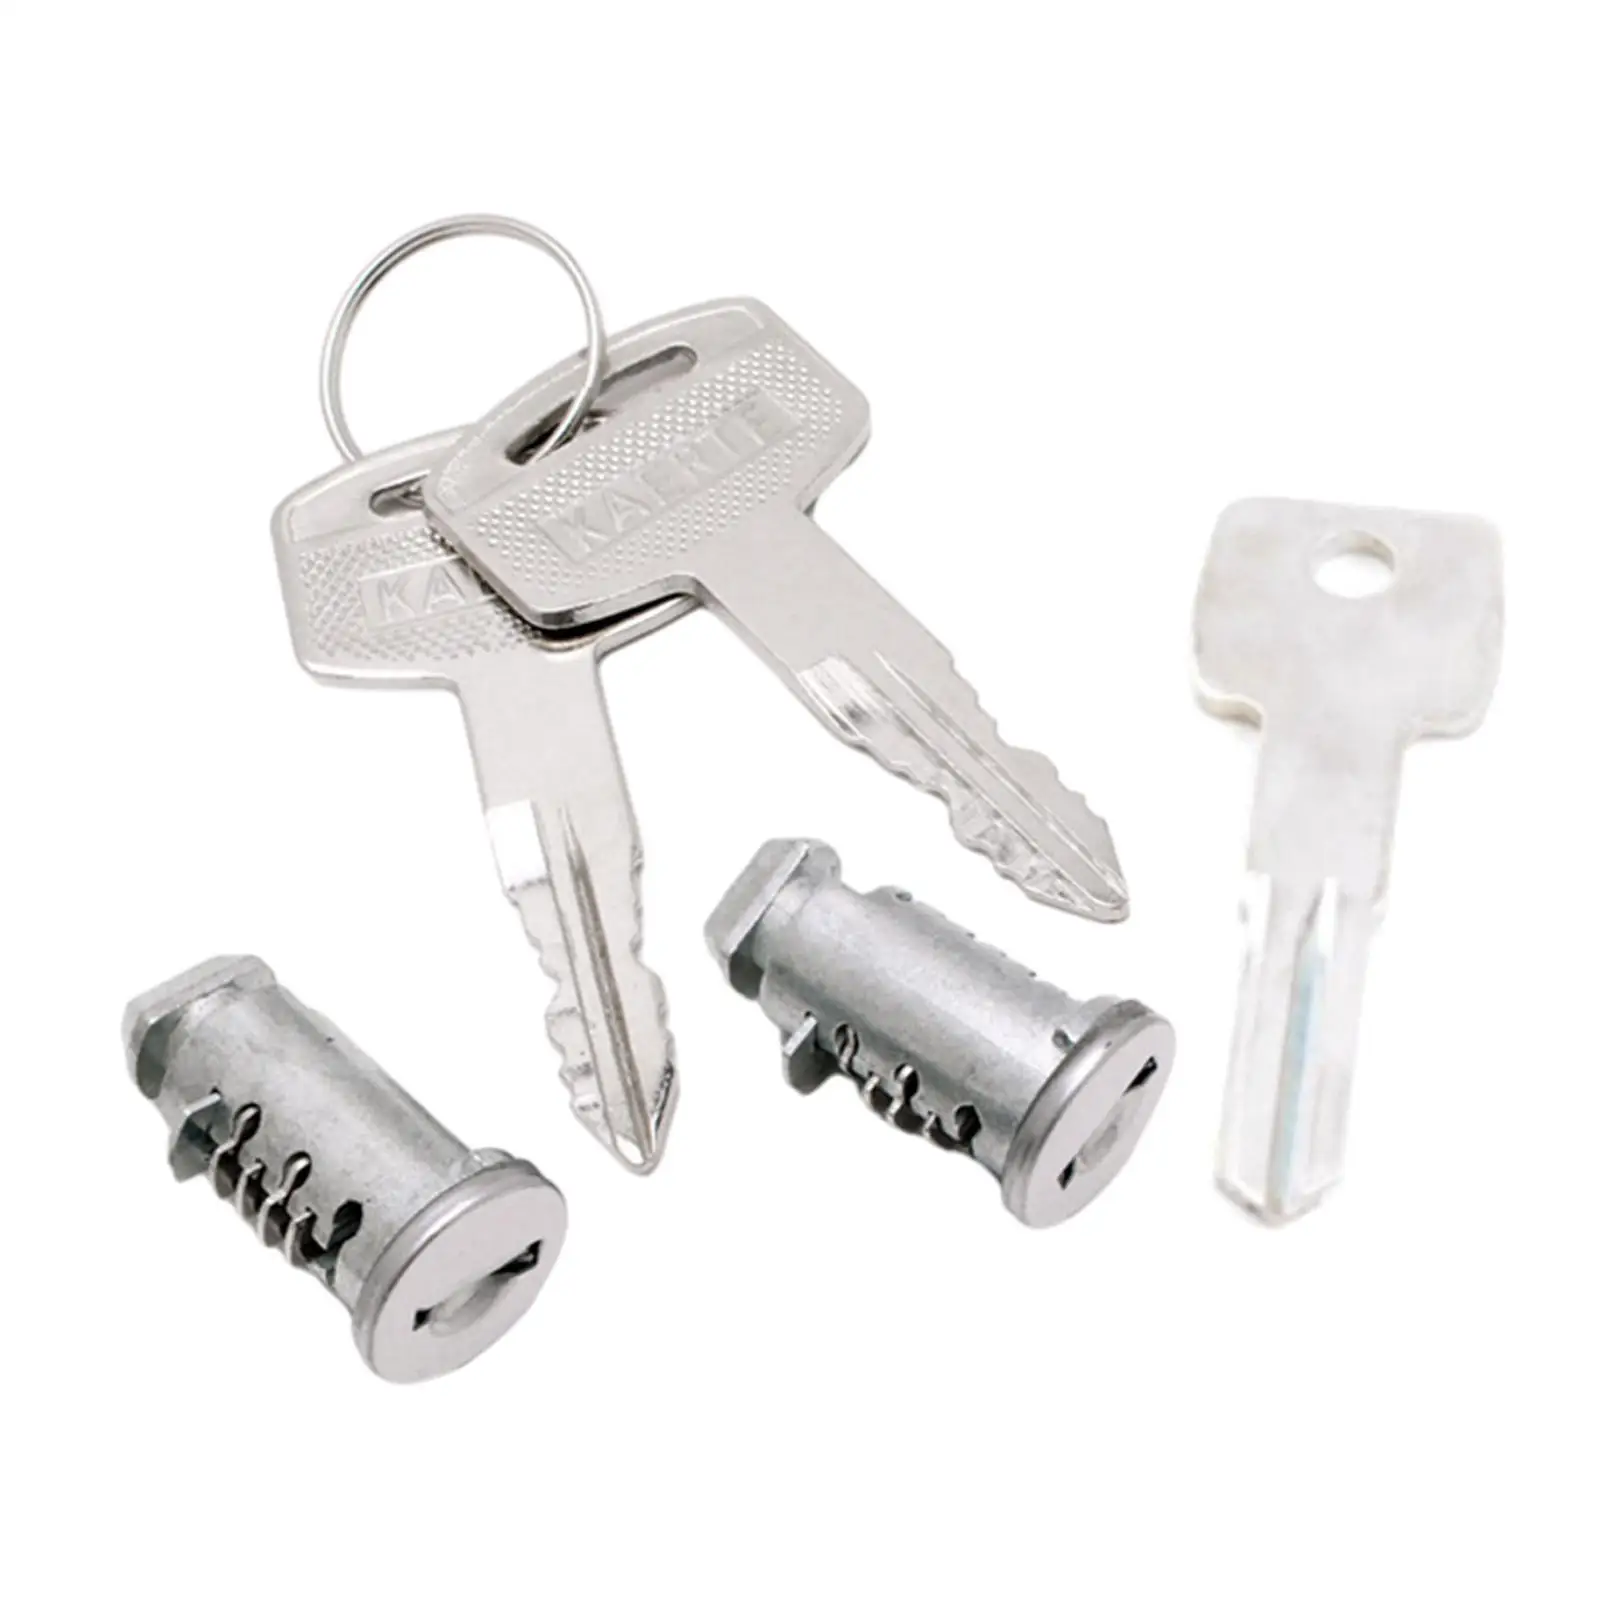 2Pcs Lock Cylindes Accessory Locks Keys Cargo Bar Lock with Key for SUV